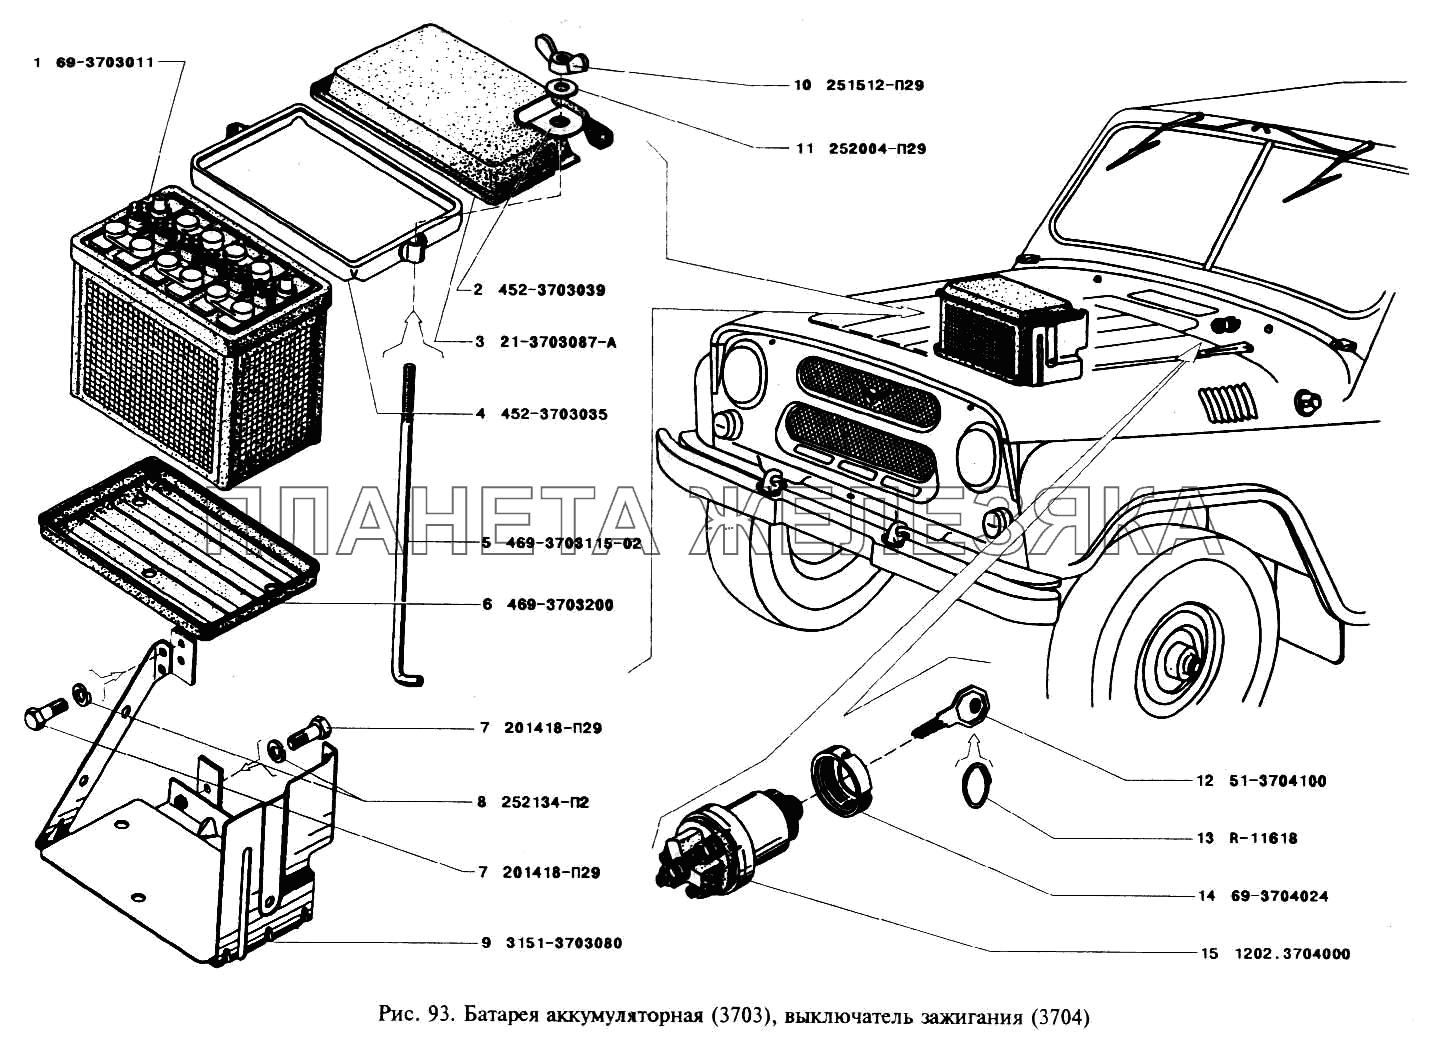 Батарея аккумуляторная и выключатель зажигания УАЗ-3151